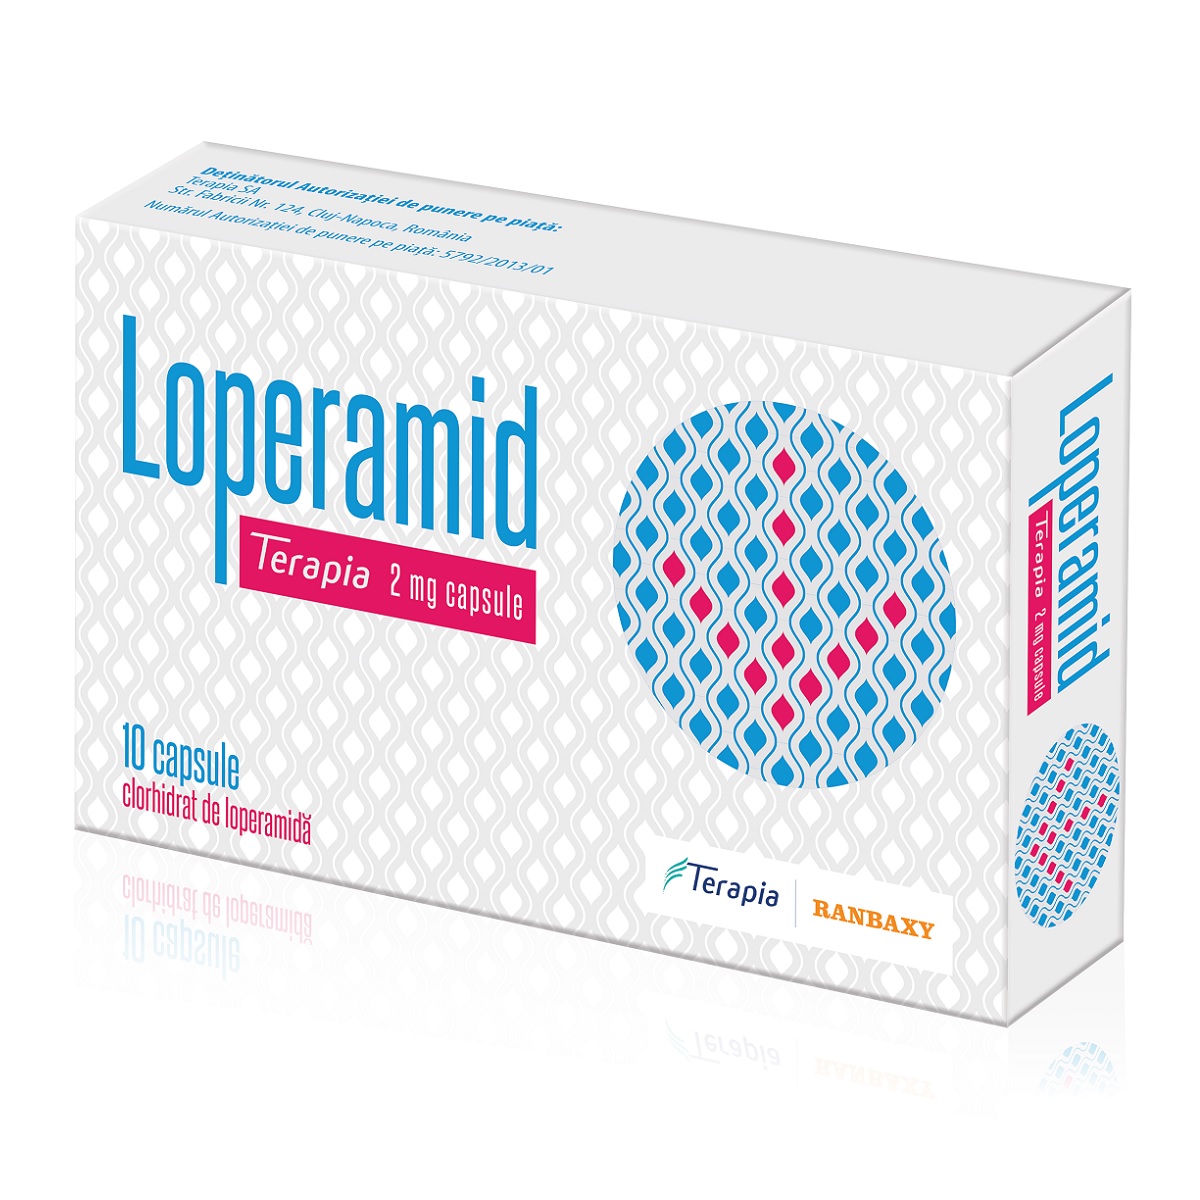 OTC (medicamente care se eliberează fără prescripție medicală) - Loperamid Terapia 2mg x 10cps, epastila.ro